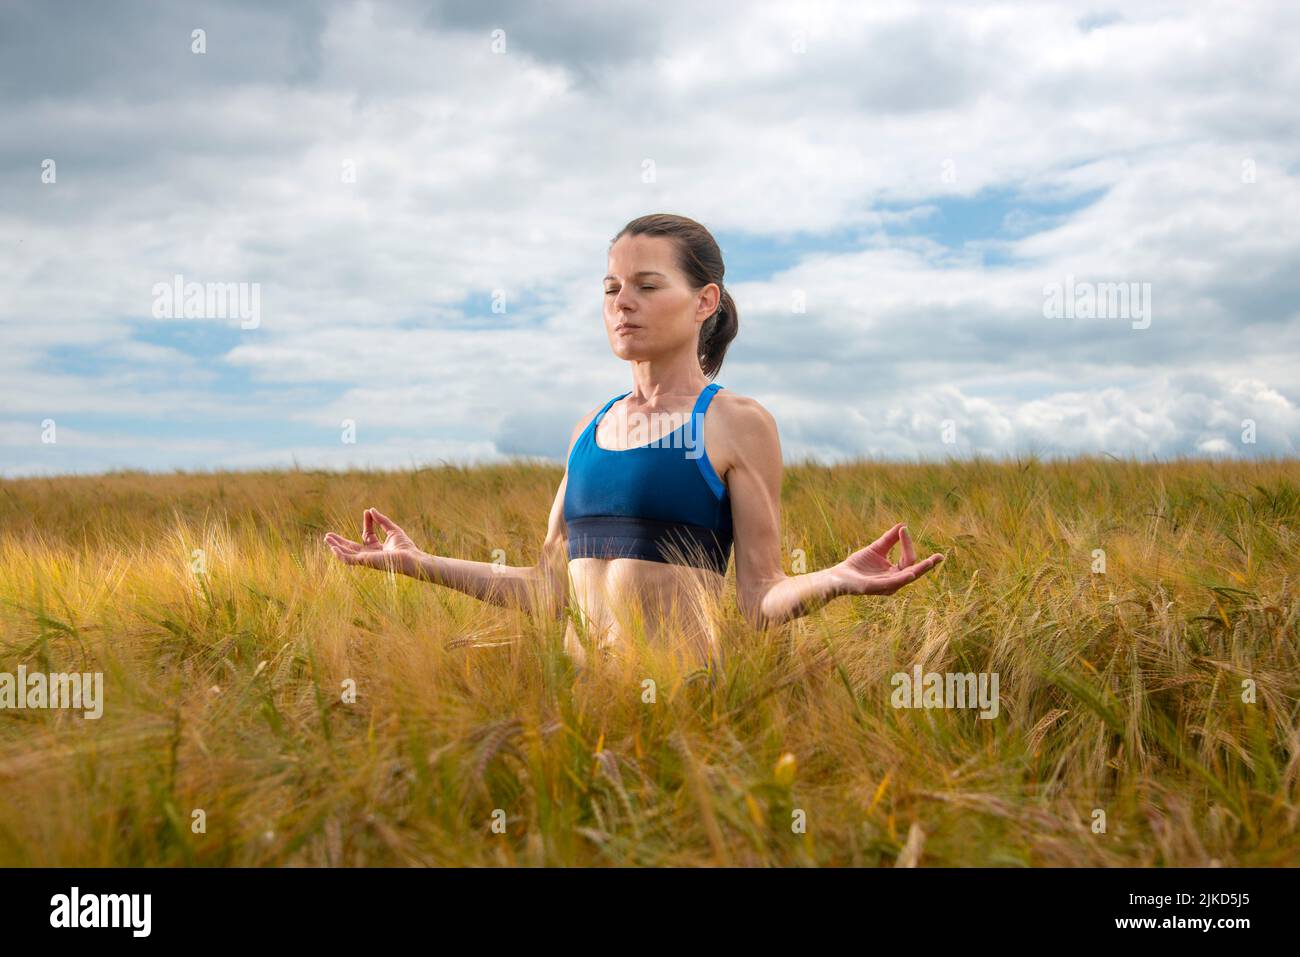 Mujer atractiva meditando y practicando yoga en un campo. Foto de stock